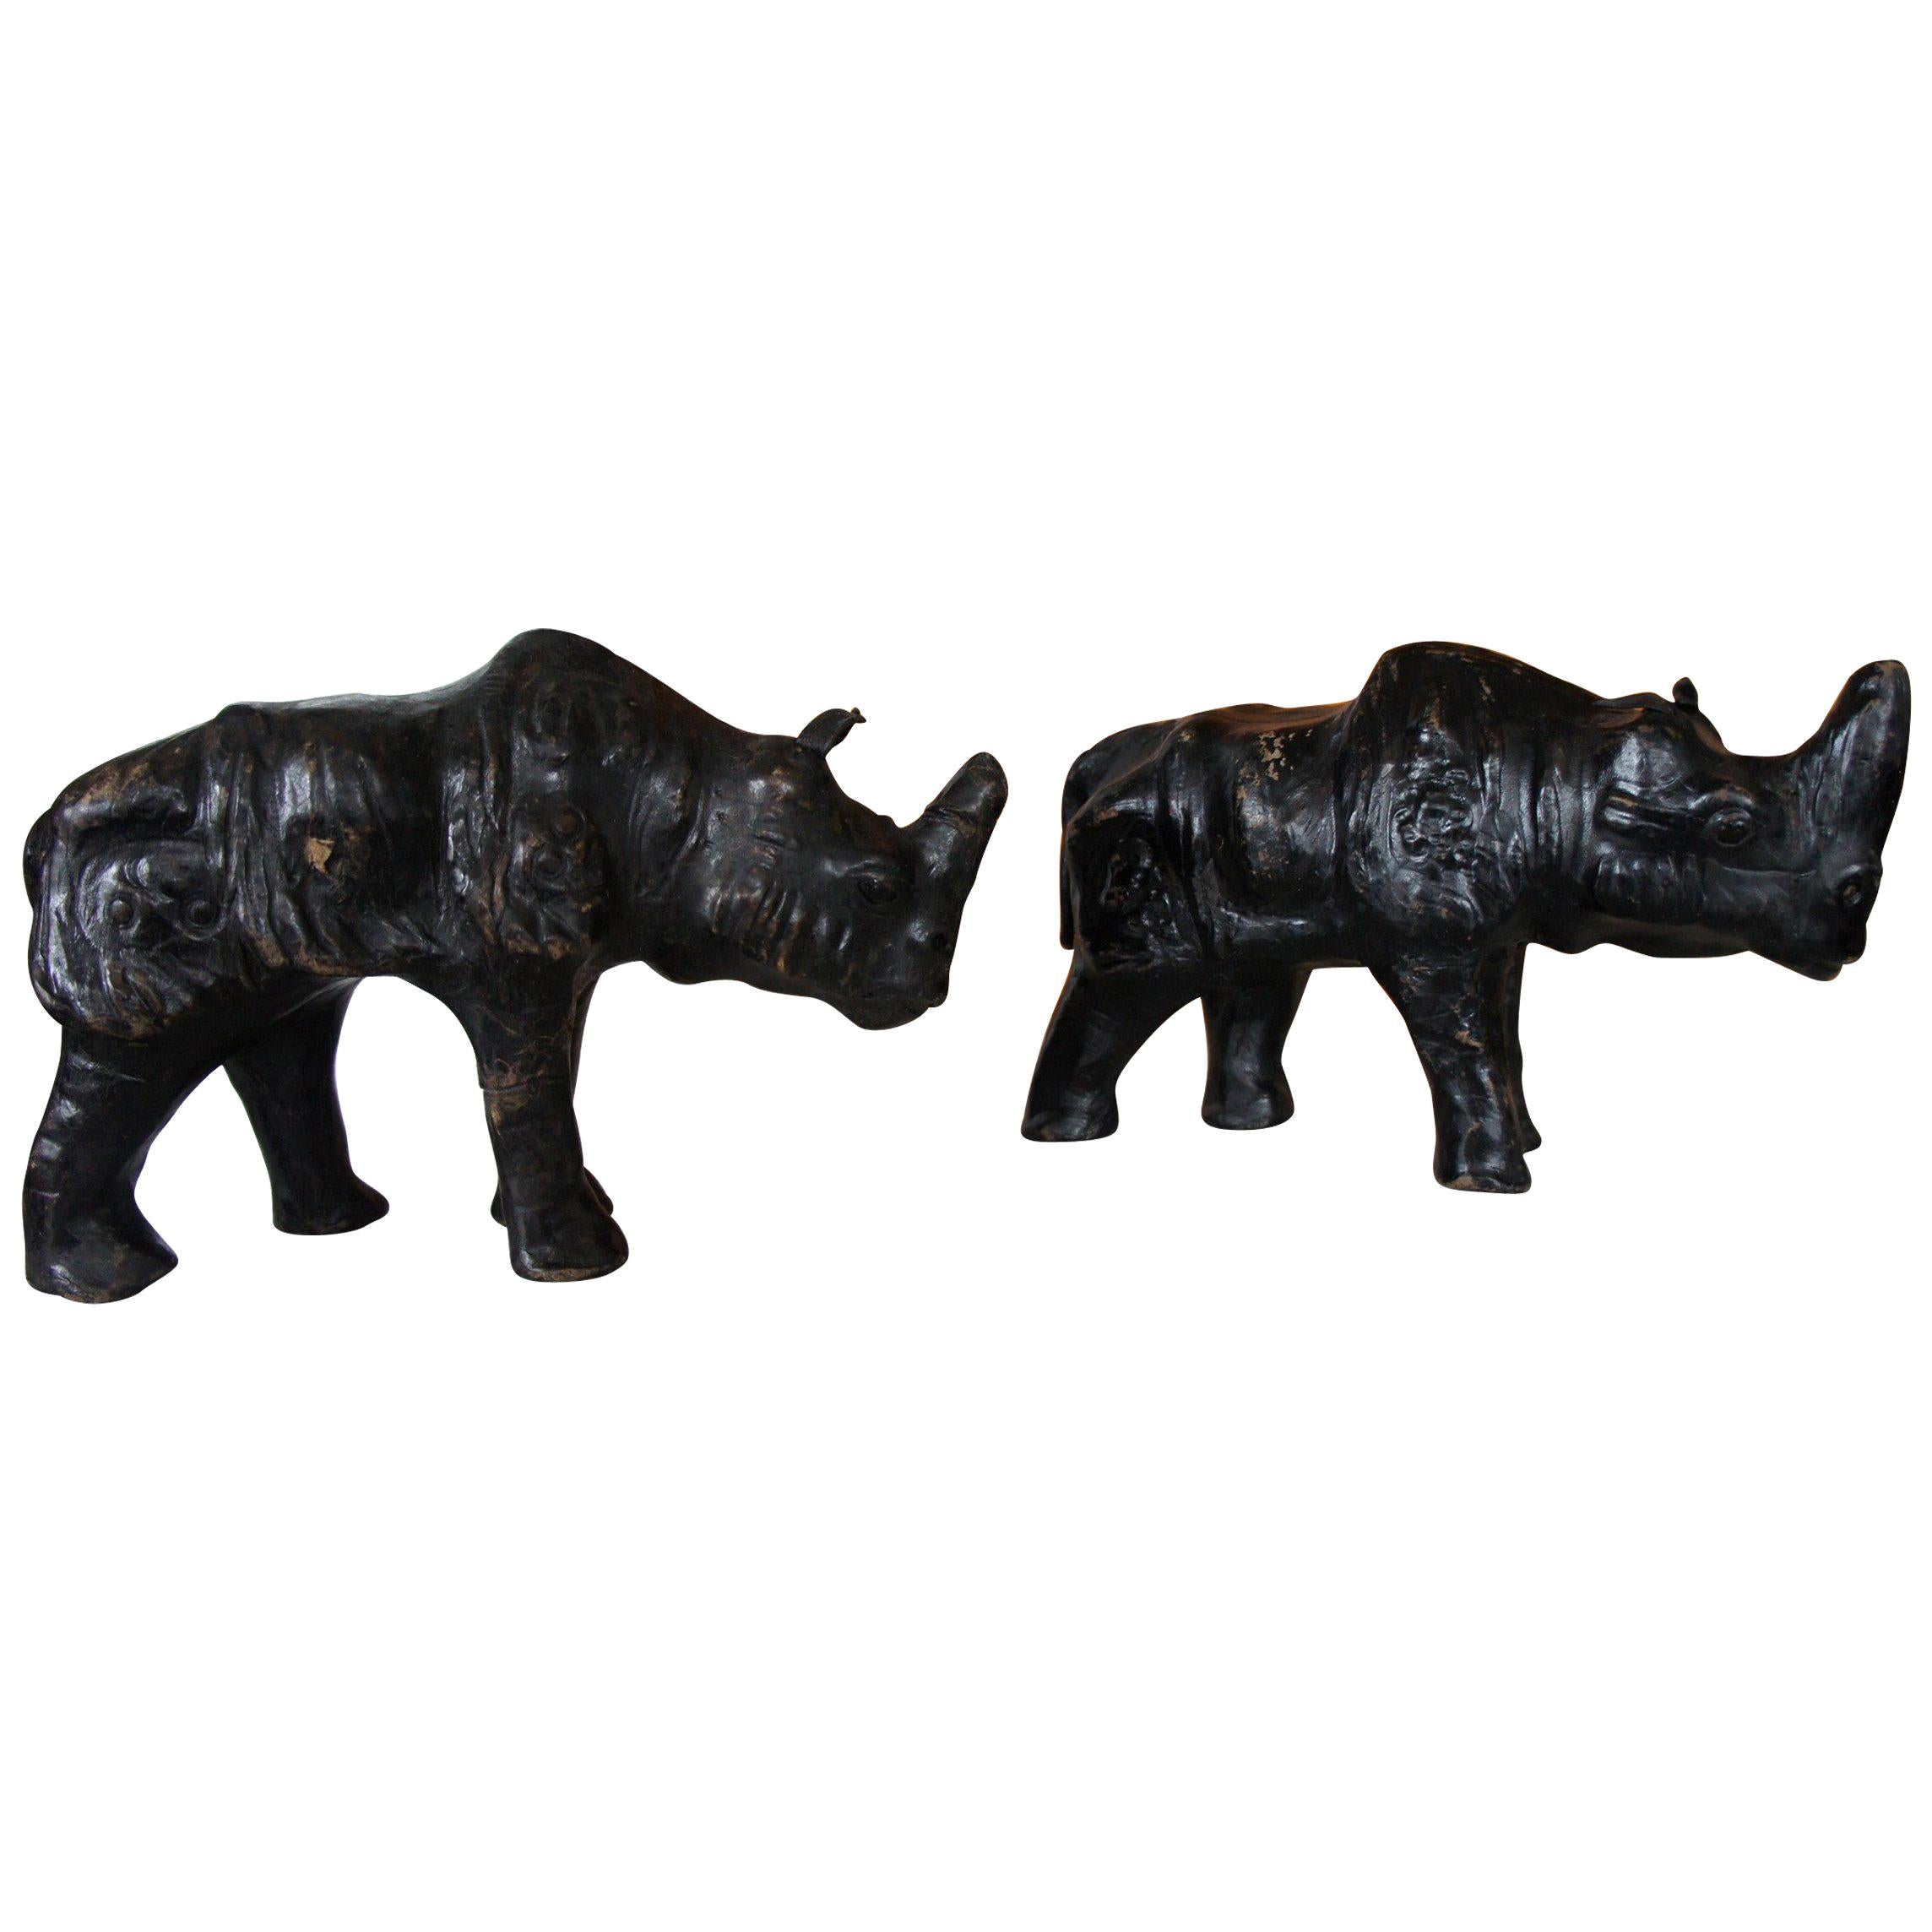 Rare et petite paire de sculptures Rhino noires en cuir sur bois avec yeux en verre